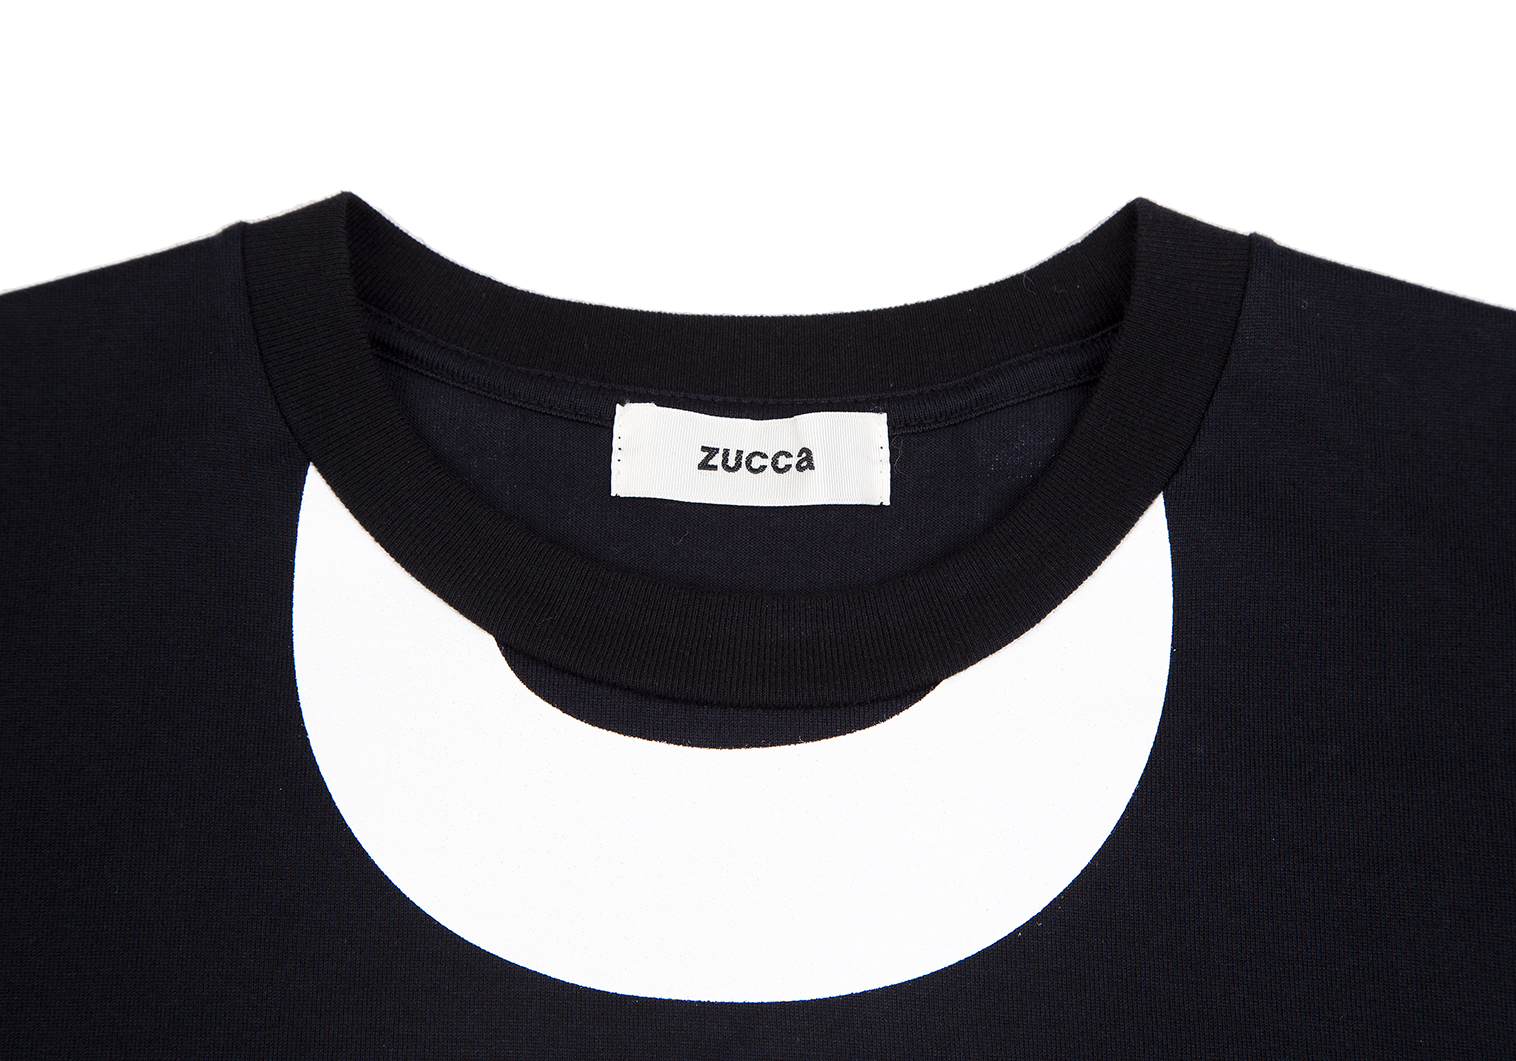 【新品】ZUCCa ビッグロゴT/Tシャツ【M】ブラック